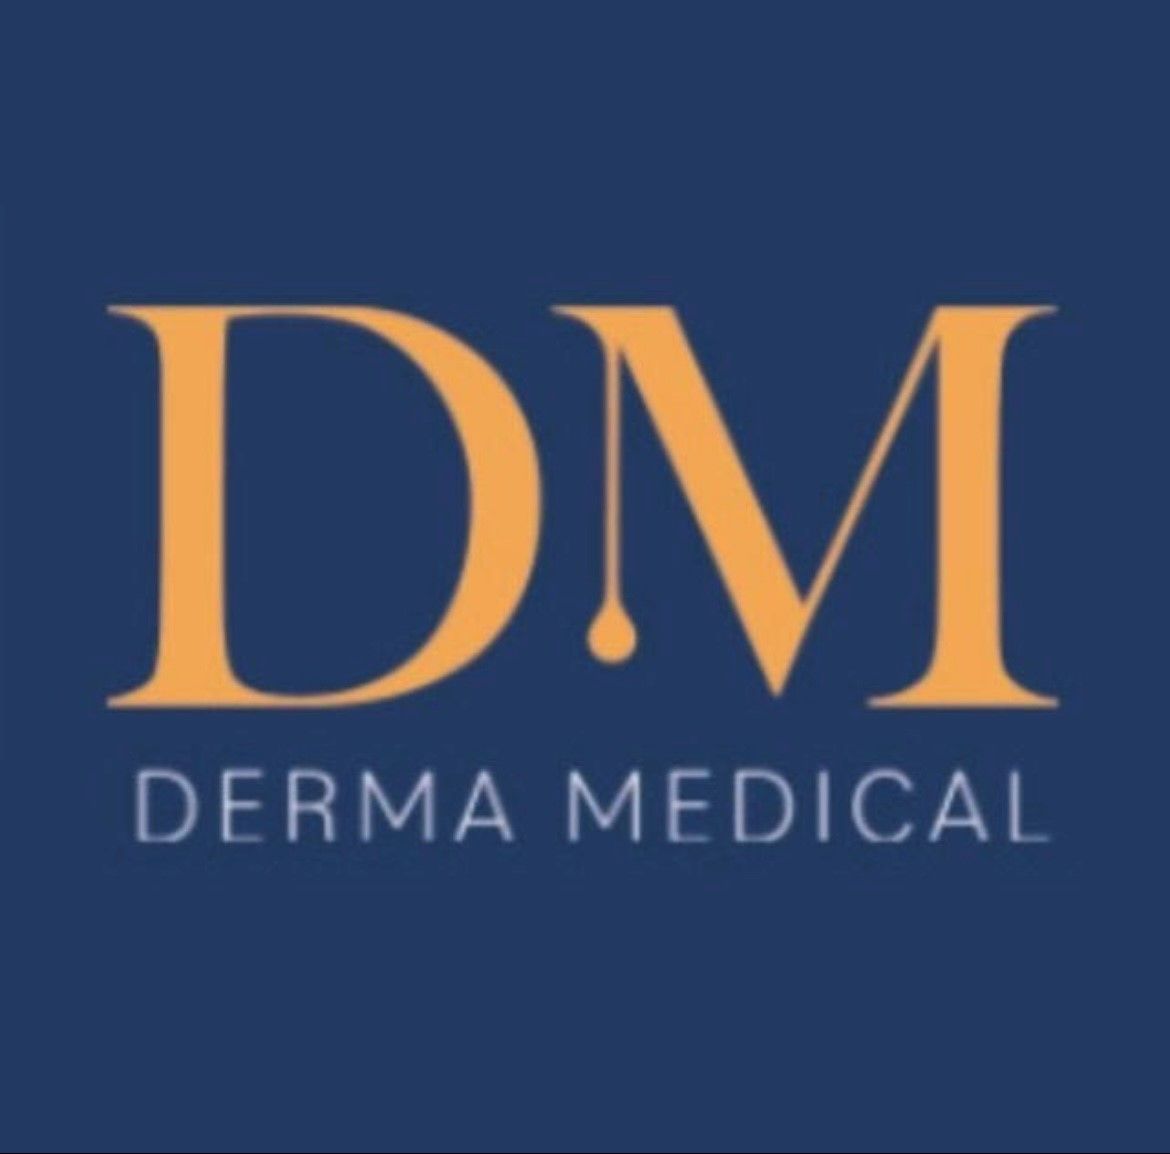 Derma Medical